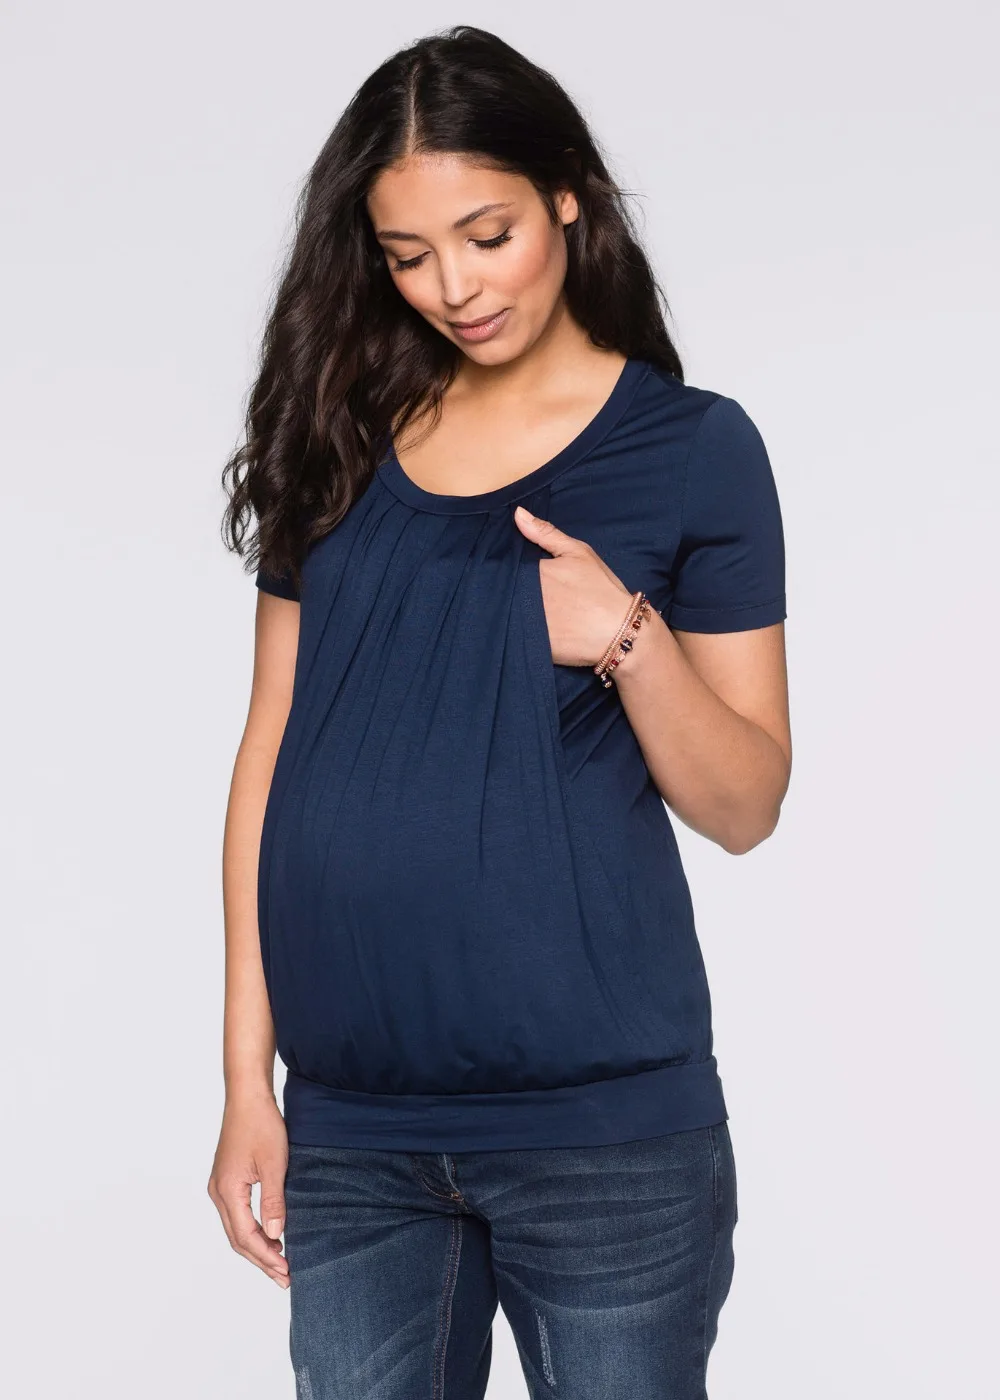 Грудное вскармливание Уход топы для беременных футболки для беременных Для женщин лактации Одежда для кормления Топы Беременность футболки Gravidas Костюмы